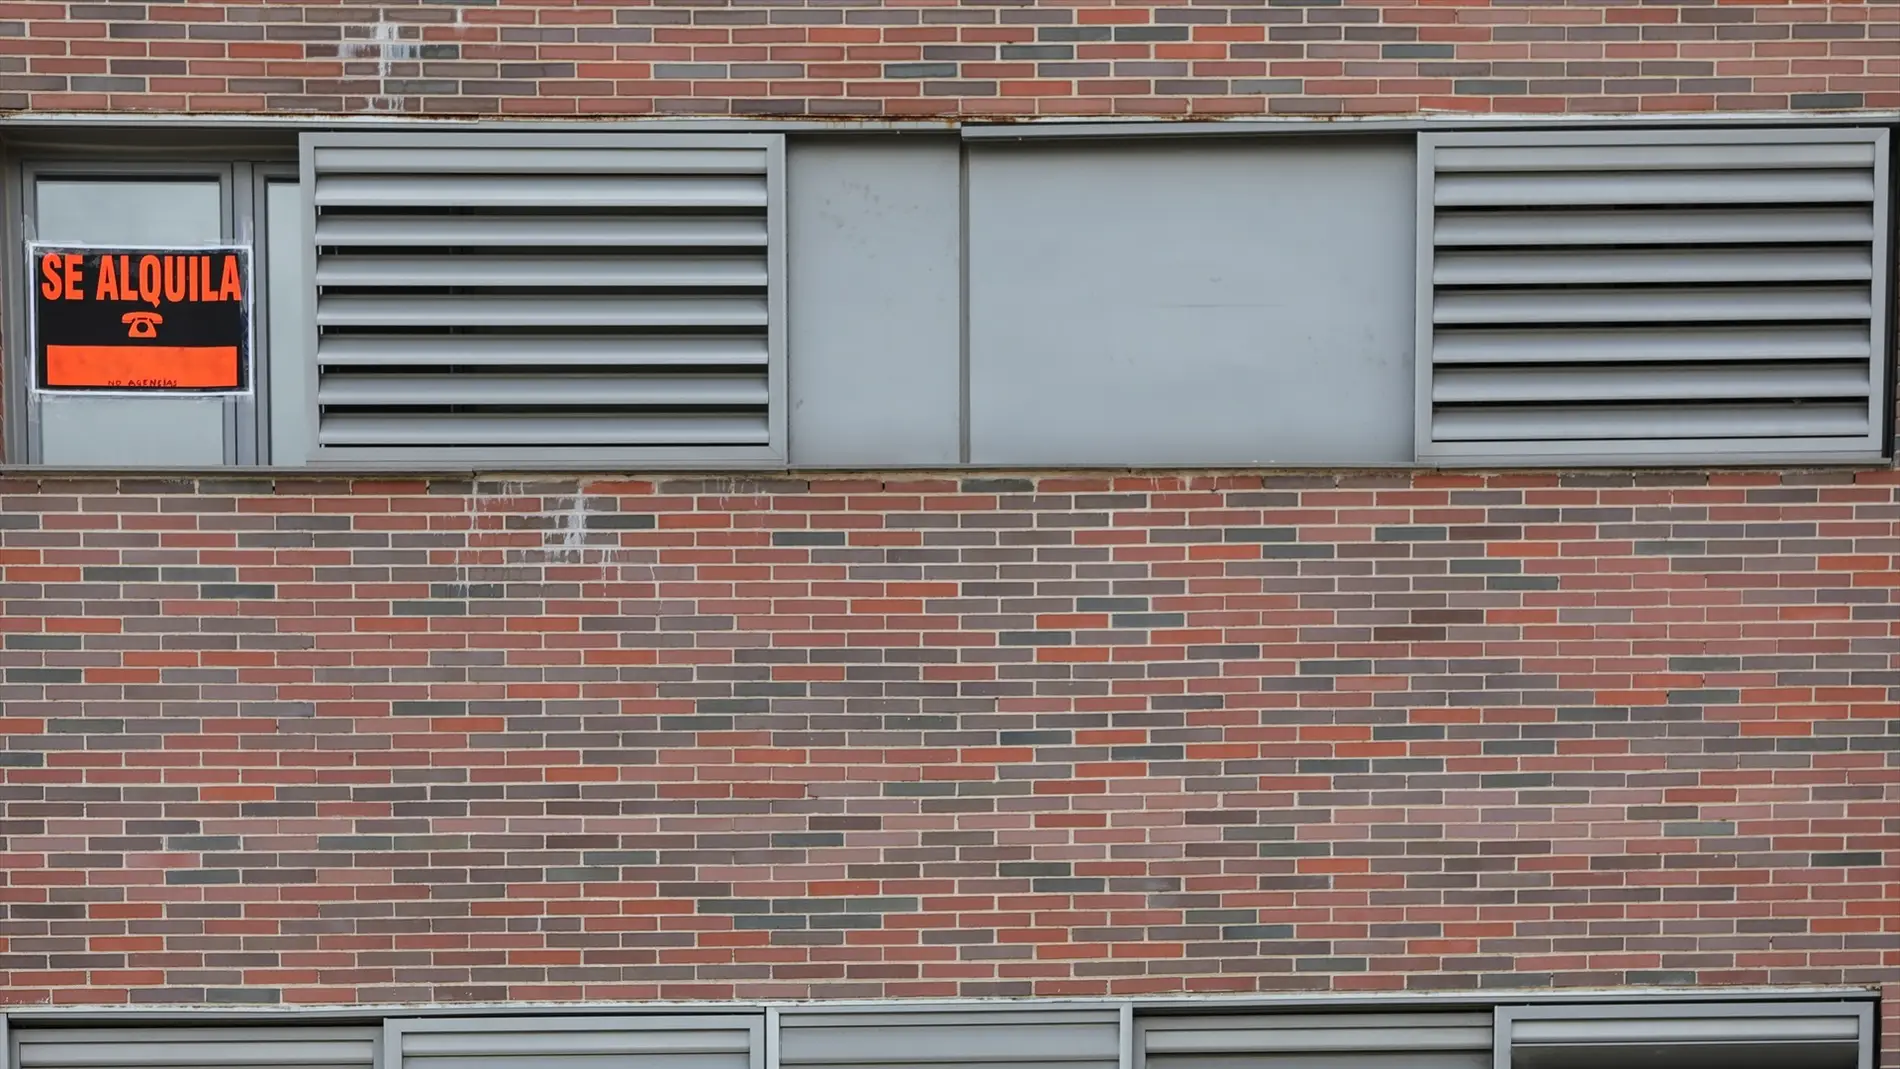 Imagen de recurso de la fachada de un edificio con un carte de 'Se alquila'